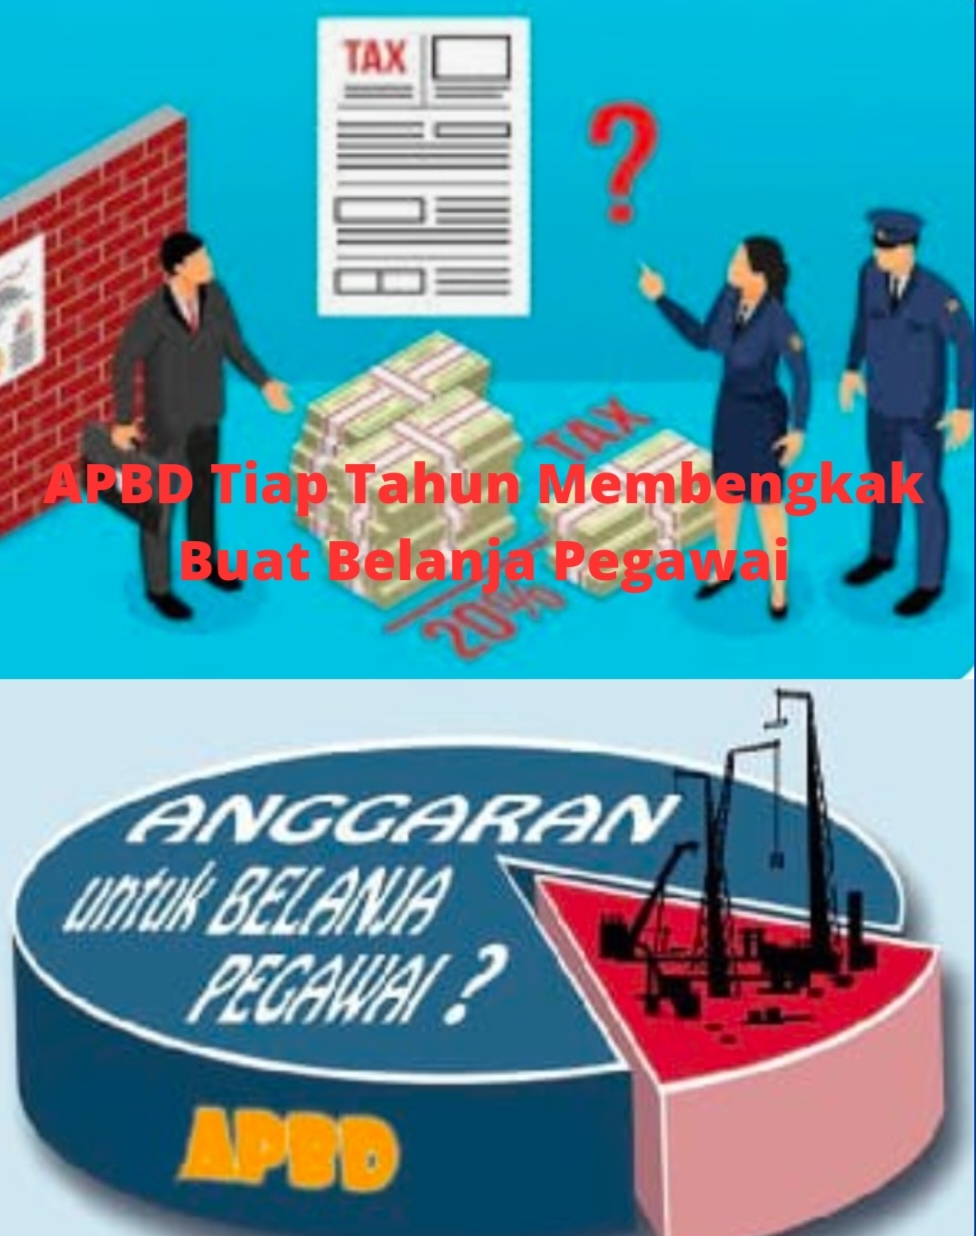 <em>APBD Kabupaten Bekasi setiap tahun Membengkak Buat Belanja Pegawai</em>